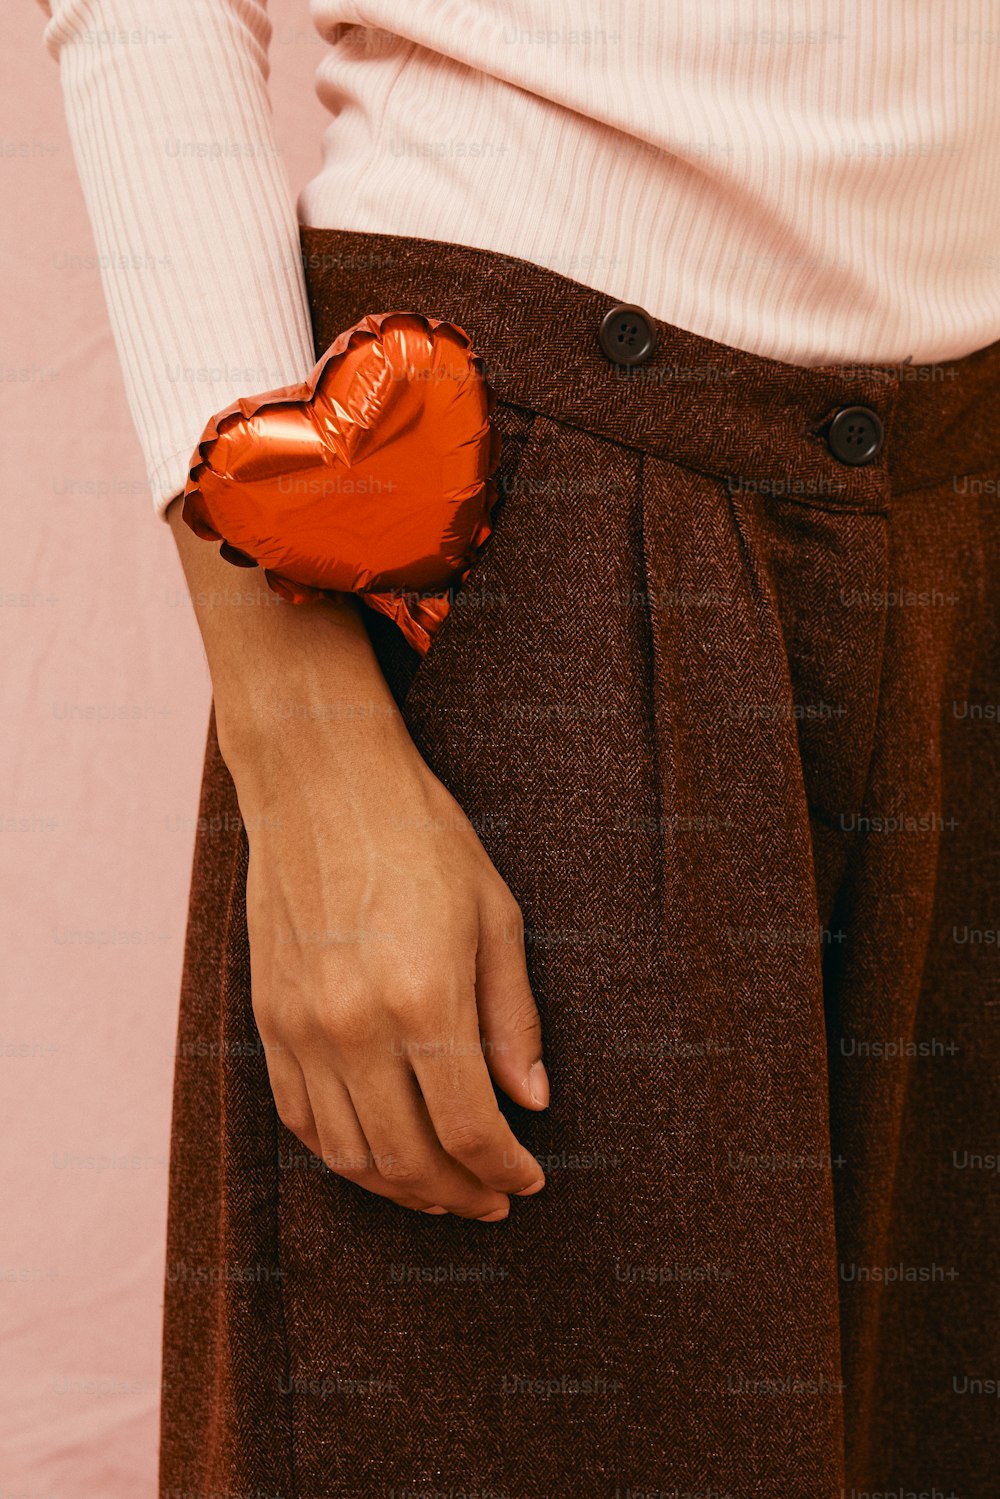 um close up de uma pessoa segurando um objeto em forma de coração